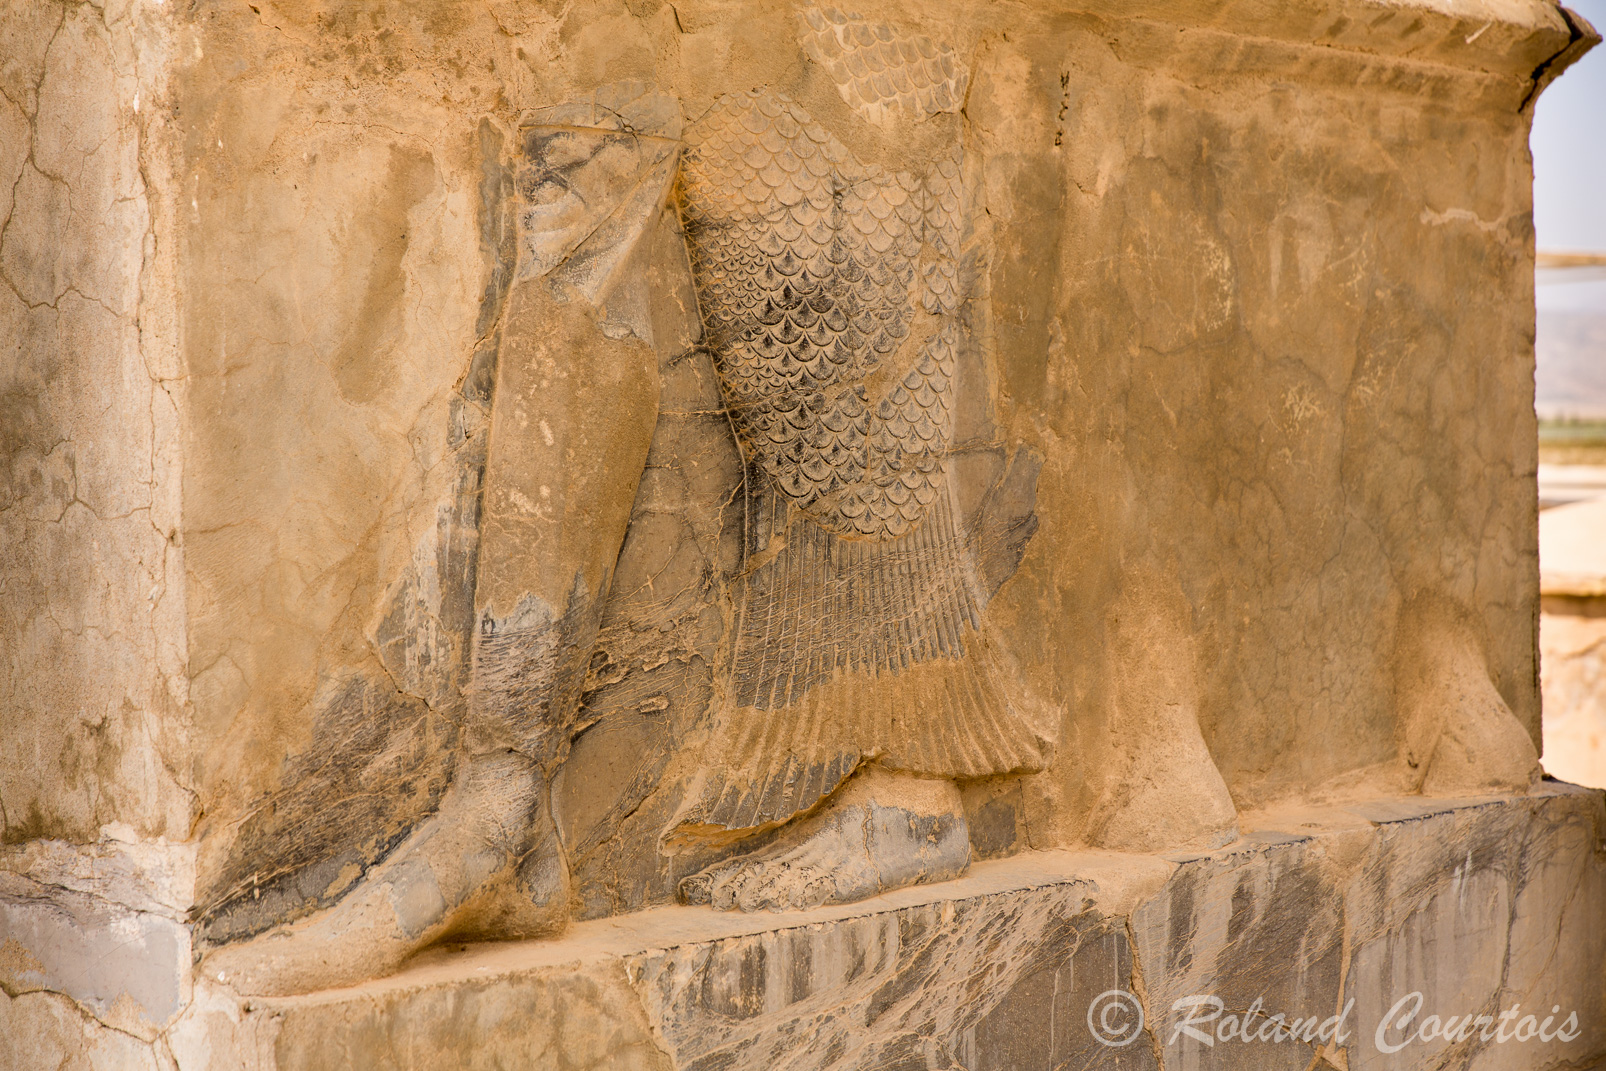 Pasargades. Palais d'audience. Des bas-reliefs, de style assyrien et fortement symboliques ornaient les entrées. Ici un génie-poisson et des pieds d'homme, ce serait le dieu Ea, dieu des eaux douces..